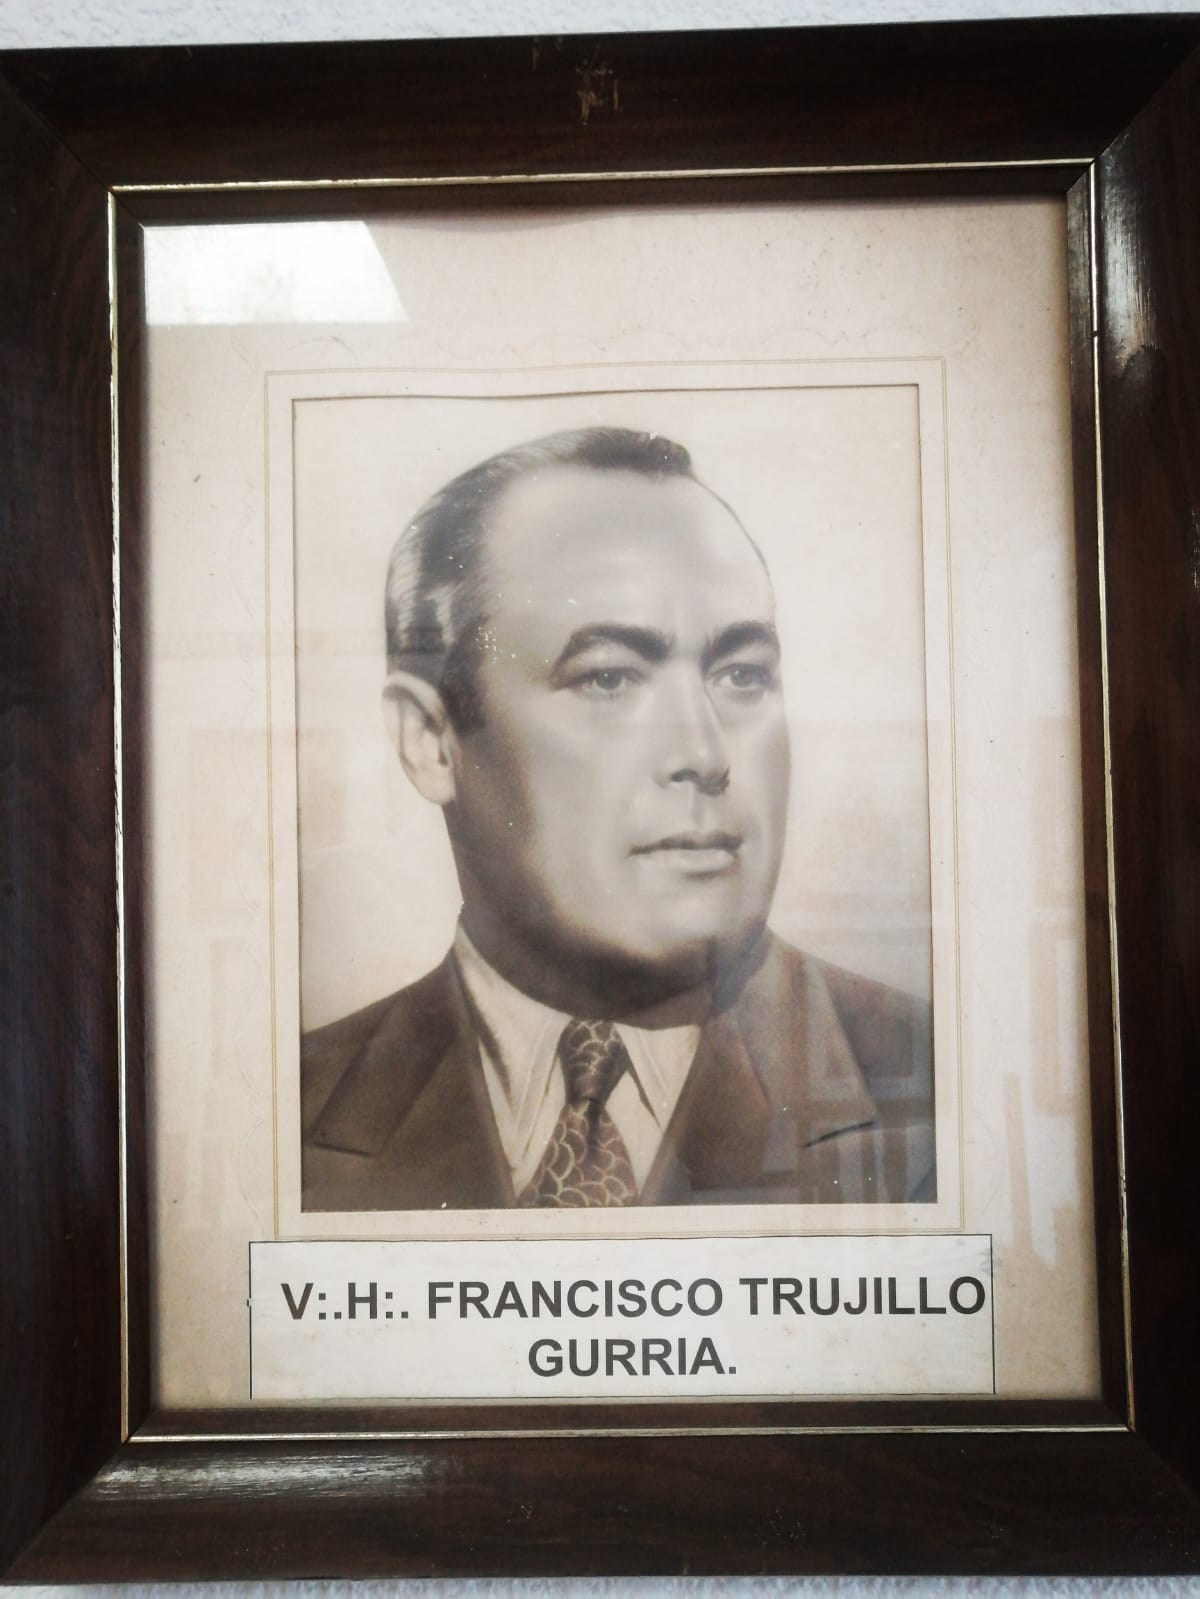 V:.H:.Francisco Trujillo Gurría - Gobernador interino (1931) Gobernador Constitucional (1939-1942)